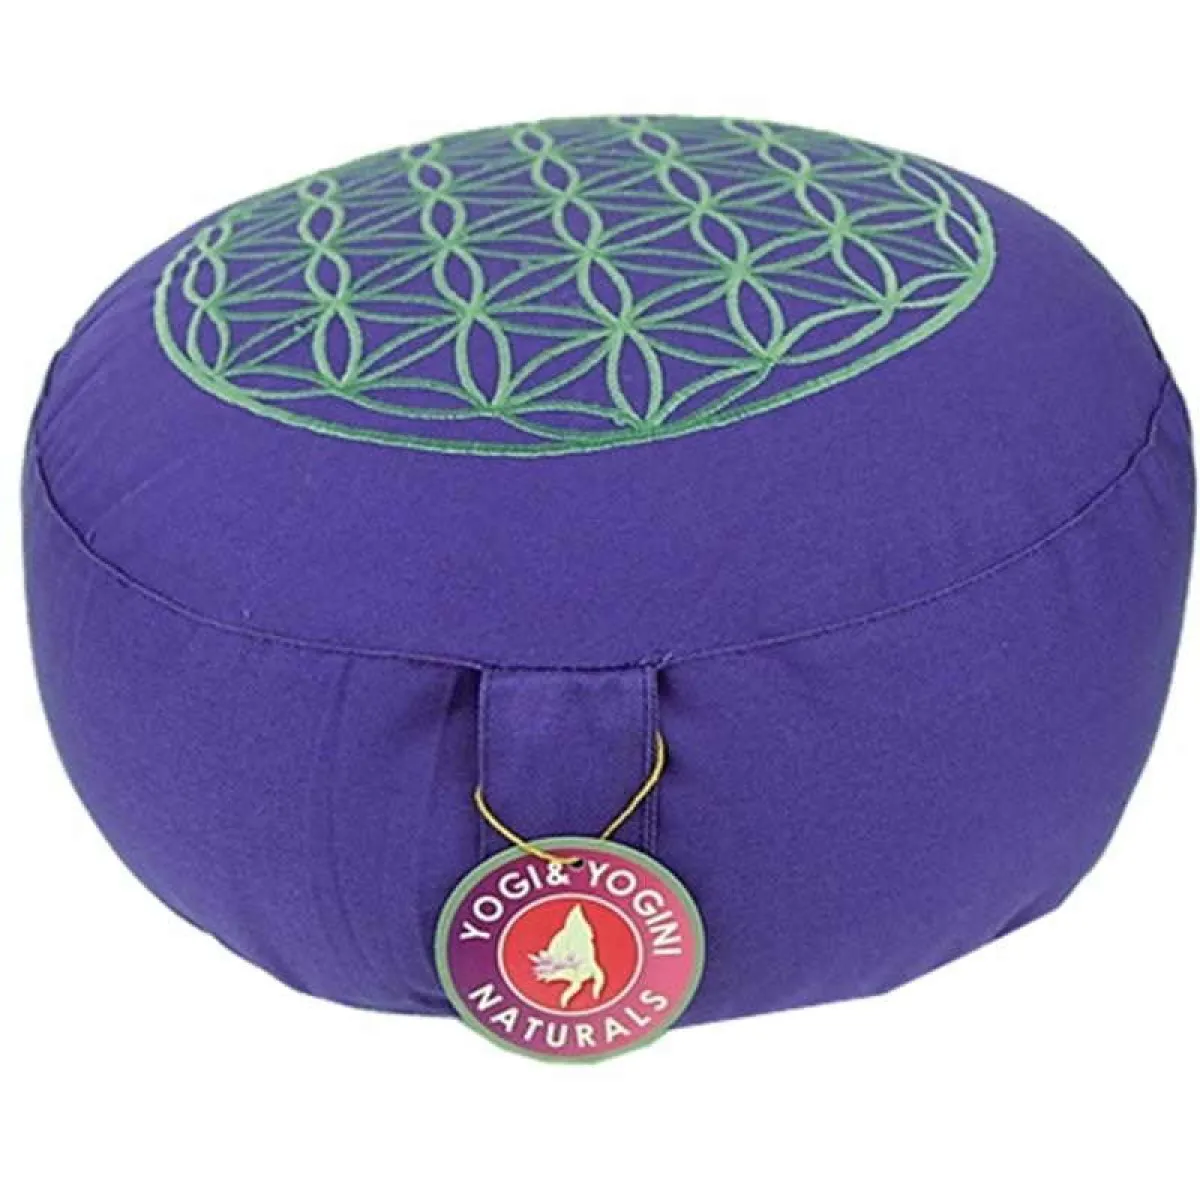 Meditation cushion | yoga cushion 33x17 cm purple with flower of life in silver